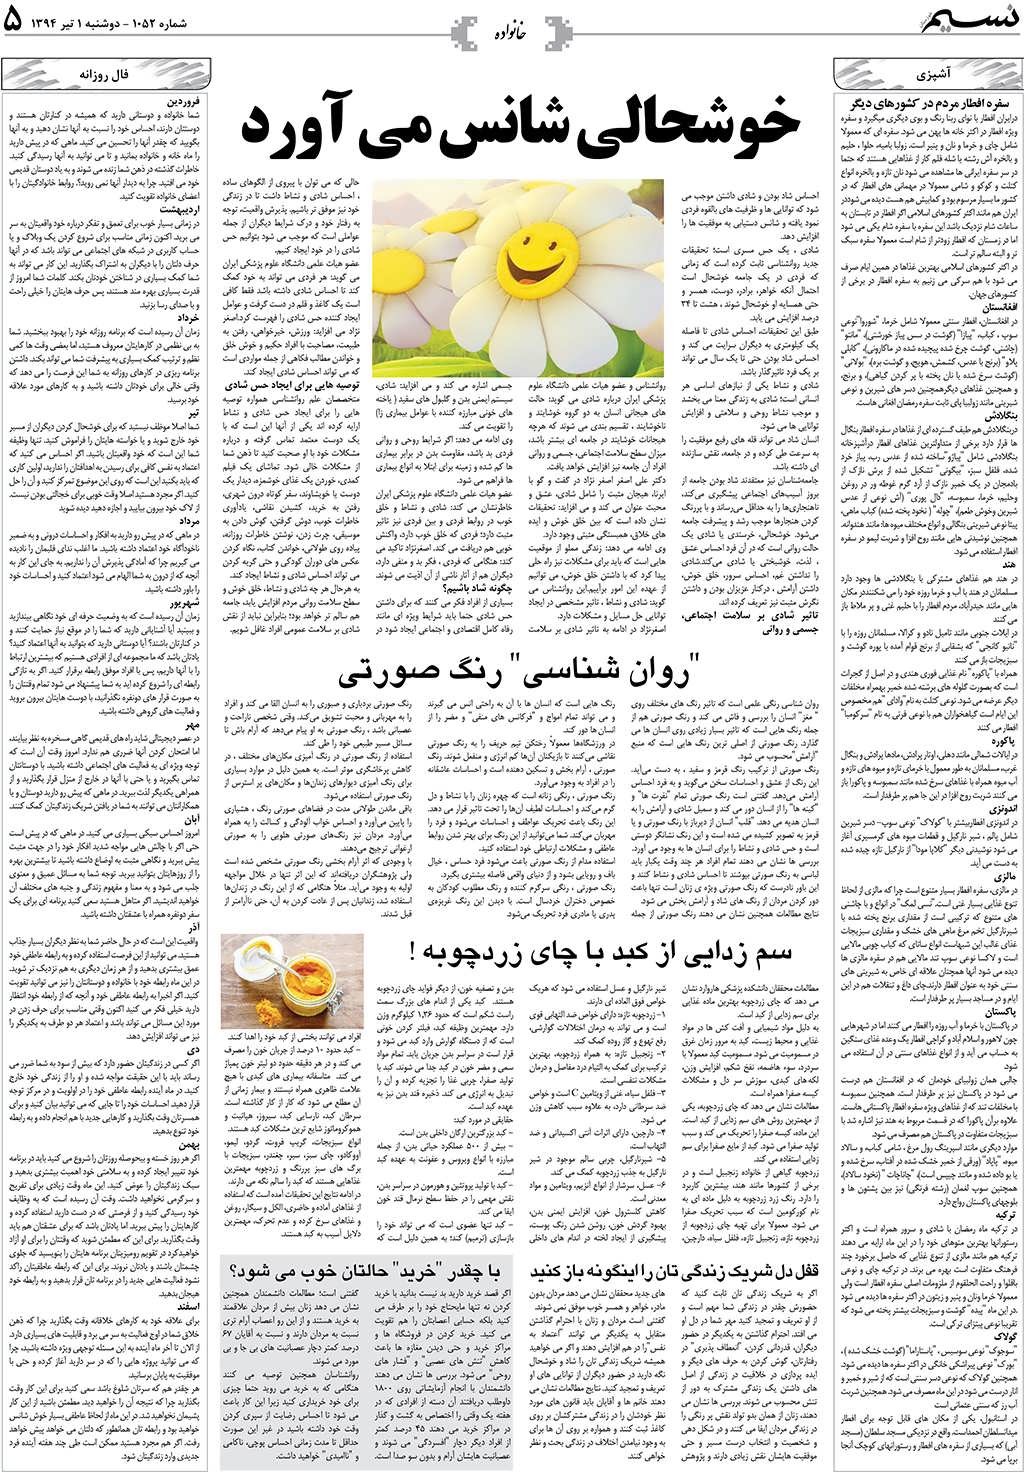 صفحه خانواده روزنامه نسیم شماره 1052